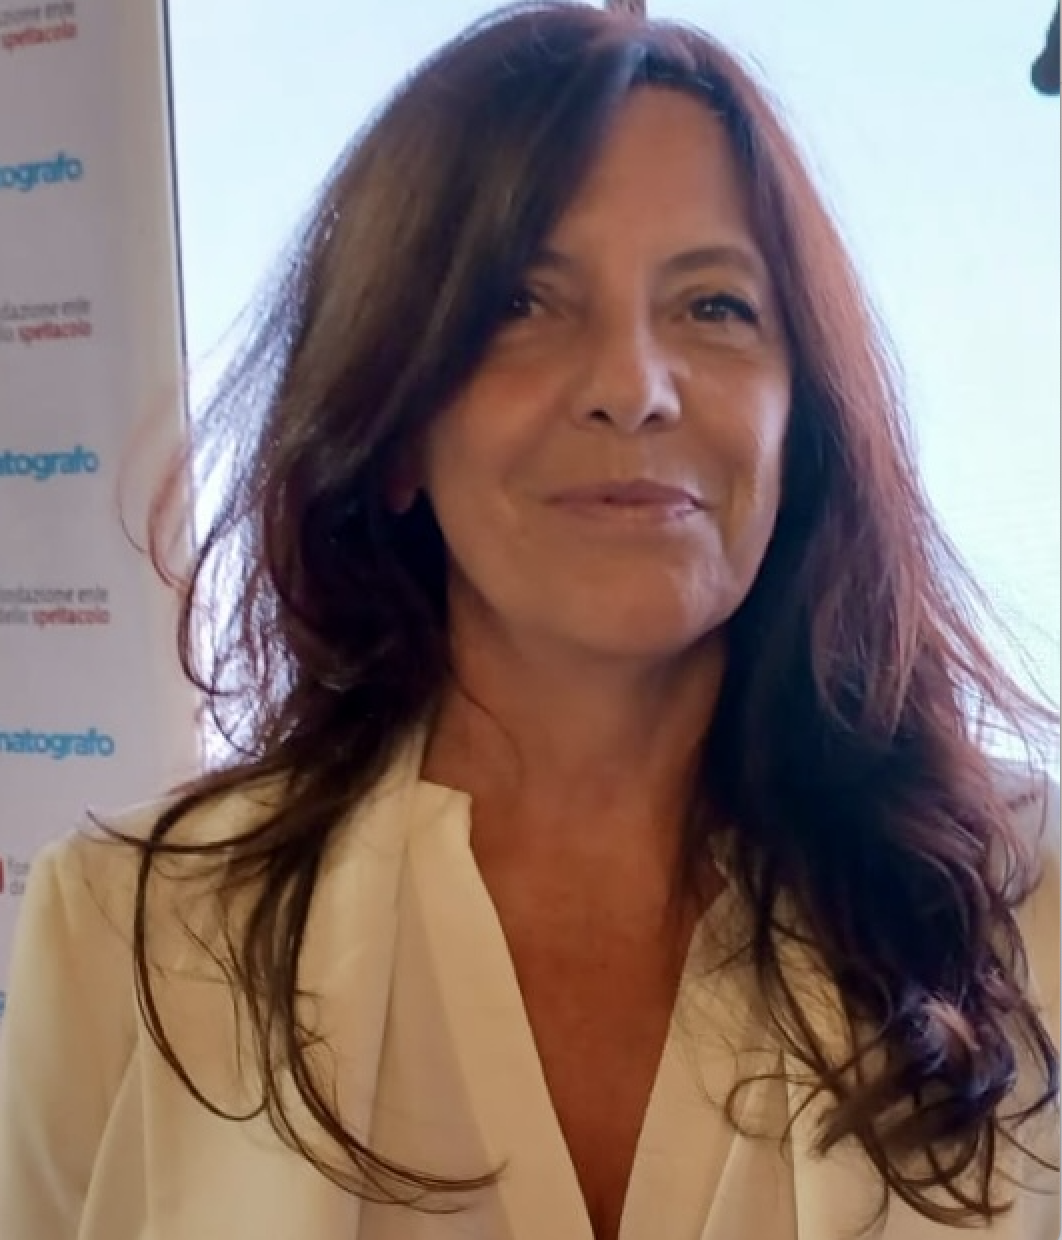 Cristina Scognamillo